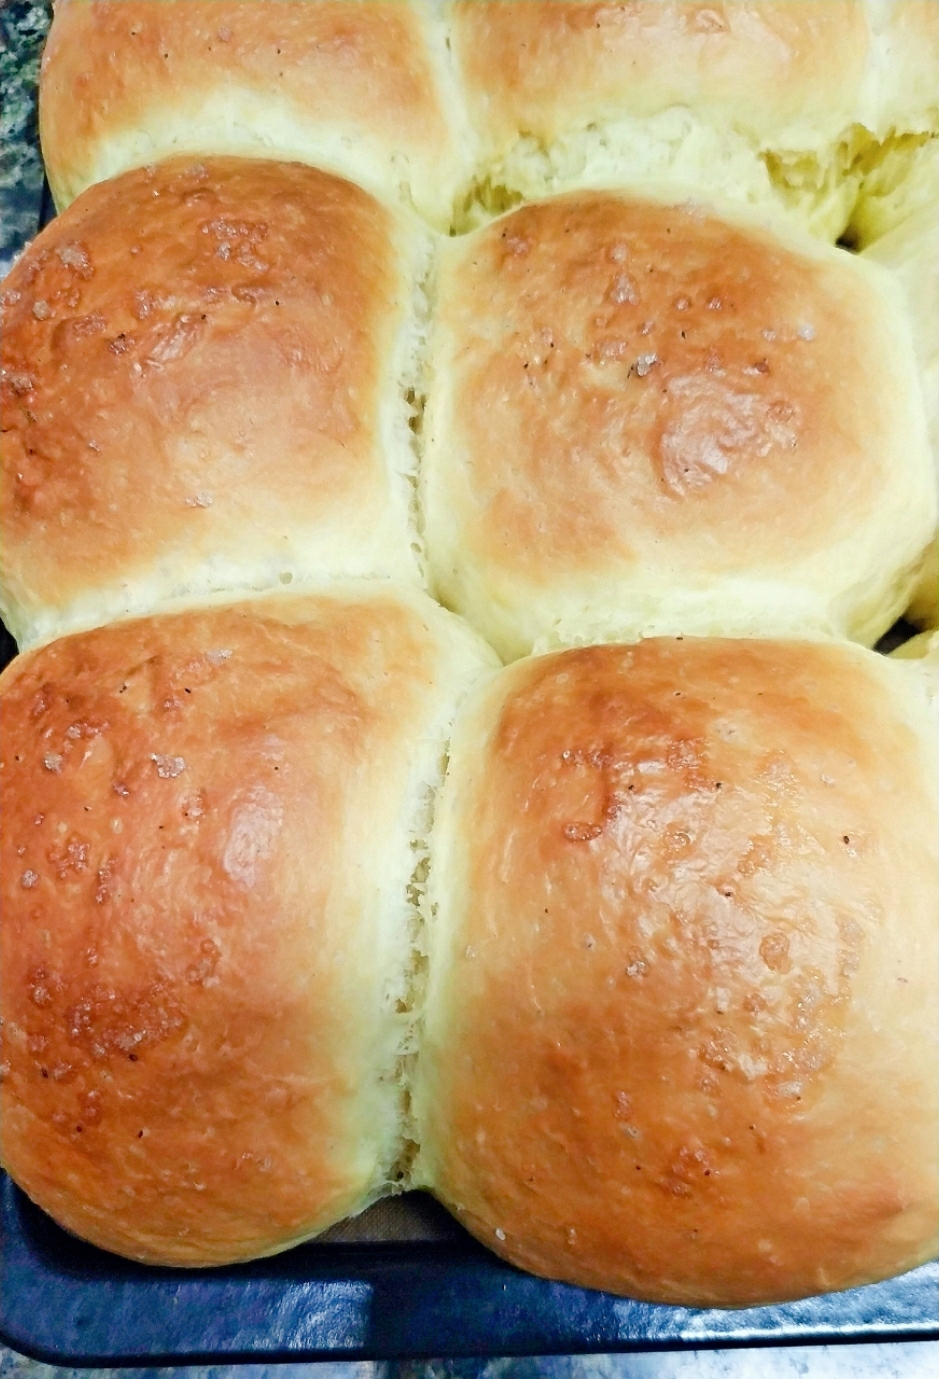 超软淡奶油小面包（餐包），一次发酵柔软拉丝，消耗淡奶油，持久柔软隔天不变硬